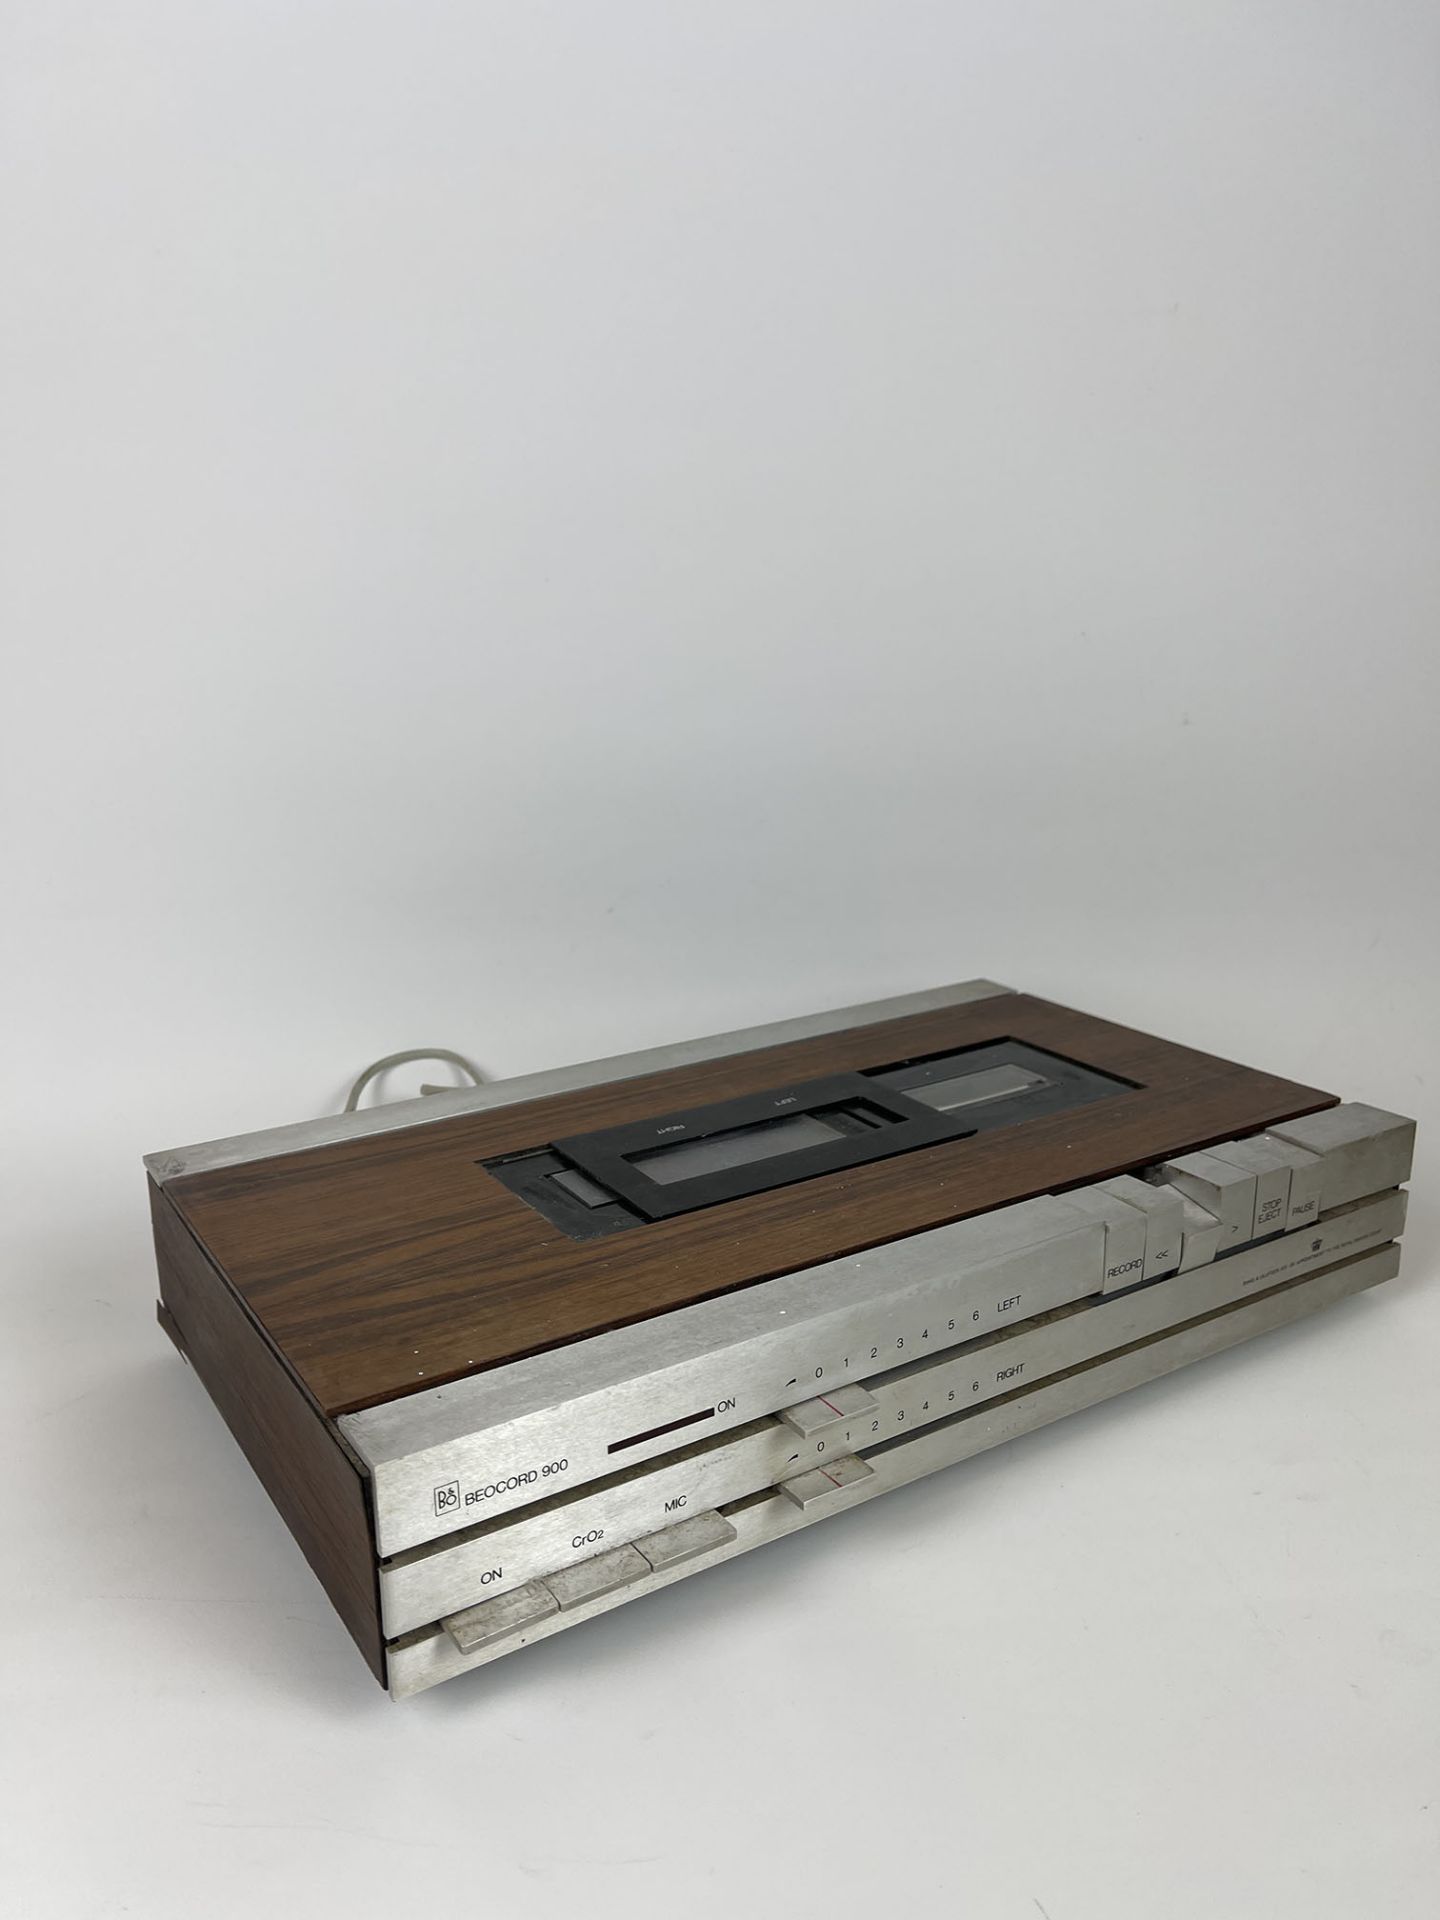 Bang & Olufsen Beocord 900 Cassette-Player/Recorder, 1973-1974, Denmark - Image 5 of 10